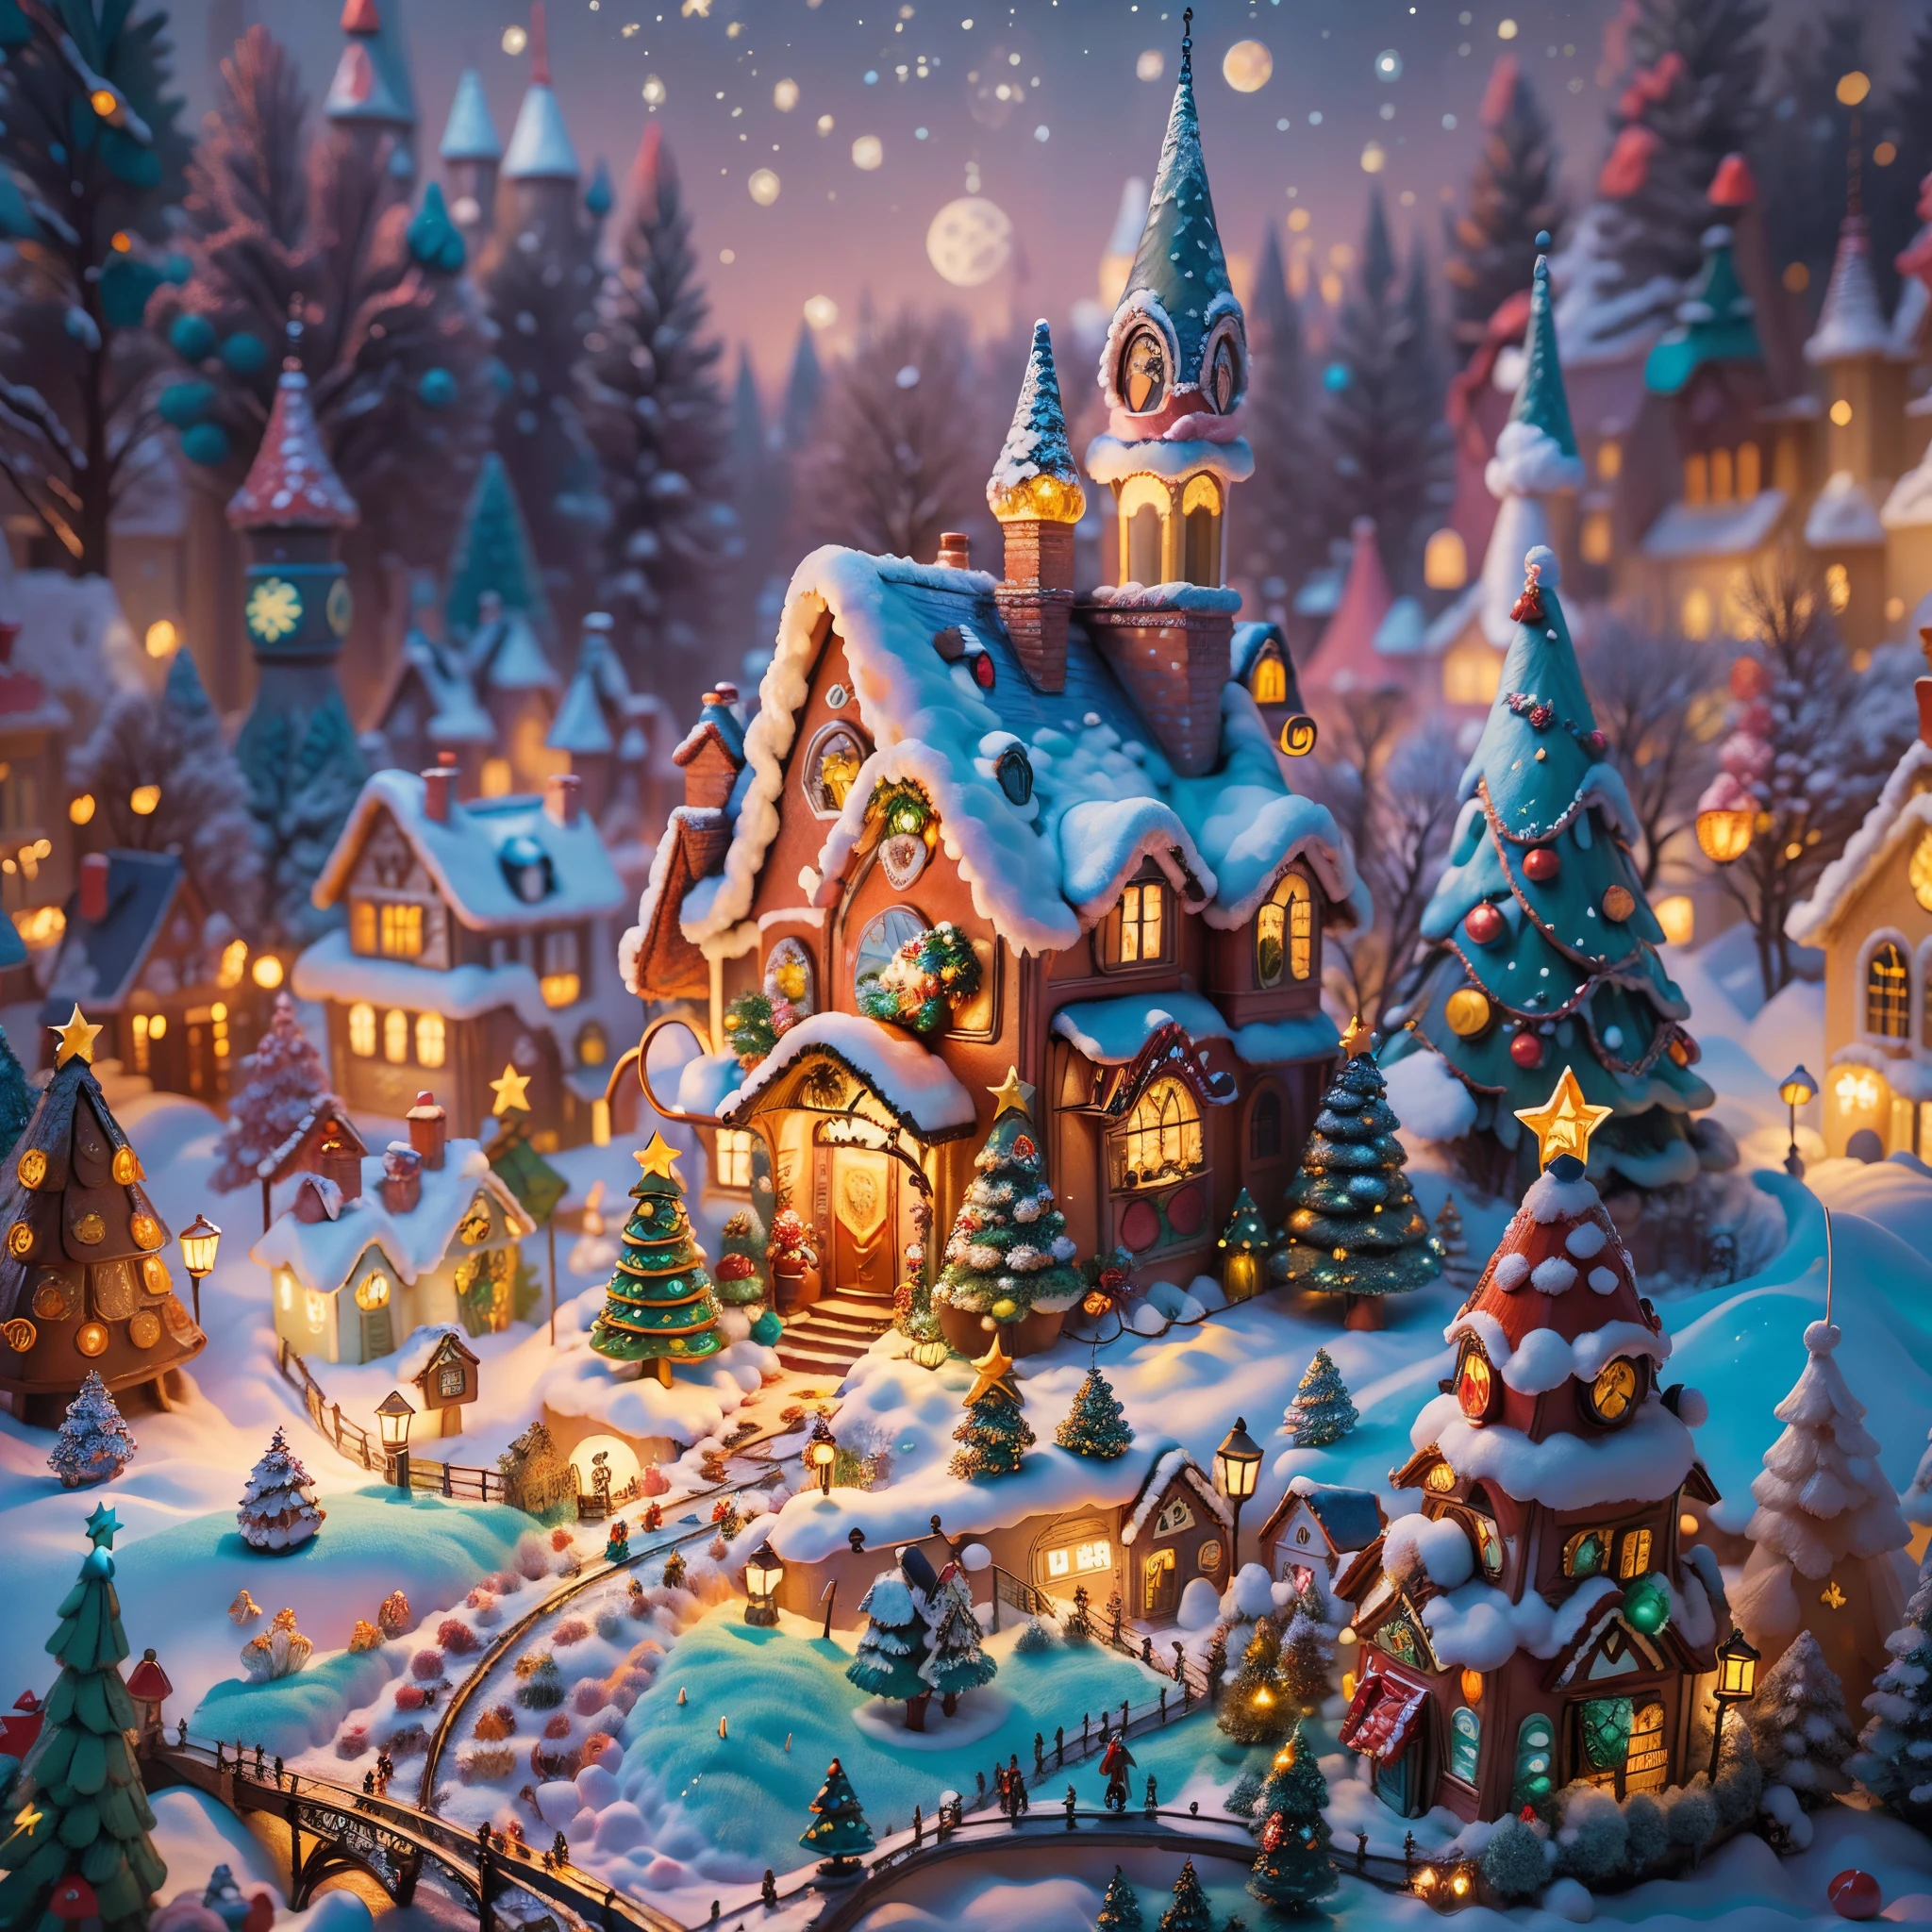 (com.tmasterpiece),（مفصلة للغاية：1.3），أفضل جودة في أحسن الأحوال，（متألق:1.2），（قرية عيد الميلاد في حكاية خرافية الحلم:1.4），(عمارة عيد الميلاد على طراز فان جوخ: 1.5),（القمر خالي），((حلويات لذيذة，شجرة عيد الميلاد, الهدايا, جوارب عيد الميلاد, رجل خبز الزنجبيل لطيف，دفقة بيت الشوكولاتة)), أسلوب التوضيح, زينة عيد الميلاد, مدينة عيد الميلاد الخيالية, أسلوب تصميم جميل, الليل，حقل ثلج，اكتمال القمر，ألوان نابضة بالحياة、 ((خيال قرية عيد الميلاد الخيالية الساحرة والغريبة)), صورة سريالية, (قرية حكاية خرافية تحت عنوان الخيال), (ديكورات معمارية غريبة), (زاهى الألوان, المناظر الطبيعية مليئة بالحلوى), (ساحر, مشهد سحري), (نابضة بالحياة, مبنى بلون الحلوى), (مسار الحلوى والزنجبيل), (قلعة الحلوى) في المسافة, (ثري, com.fantasticcolors), (النجم المتلألئ حلمنا الأبعاد), (جو مخدر ويفتن), (تكوين لعوب), (تأثيرات إضاءة حية), 1.4X الواقعية，فرط HD，يظهر في هذا المشهد الجميل，（دقيق جدا，تصميم معقول，خطوط واضحة，عالية الحدة，com.tmasterpiece，الفن الرسمي，تأثير ضوء الفيلم，8 كيلو)